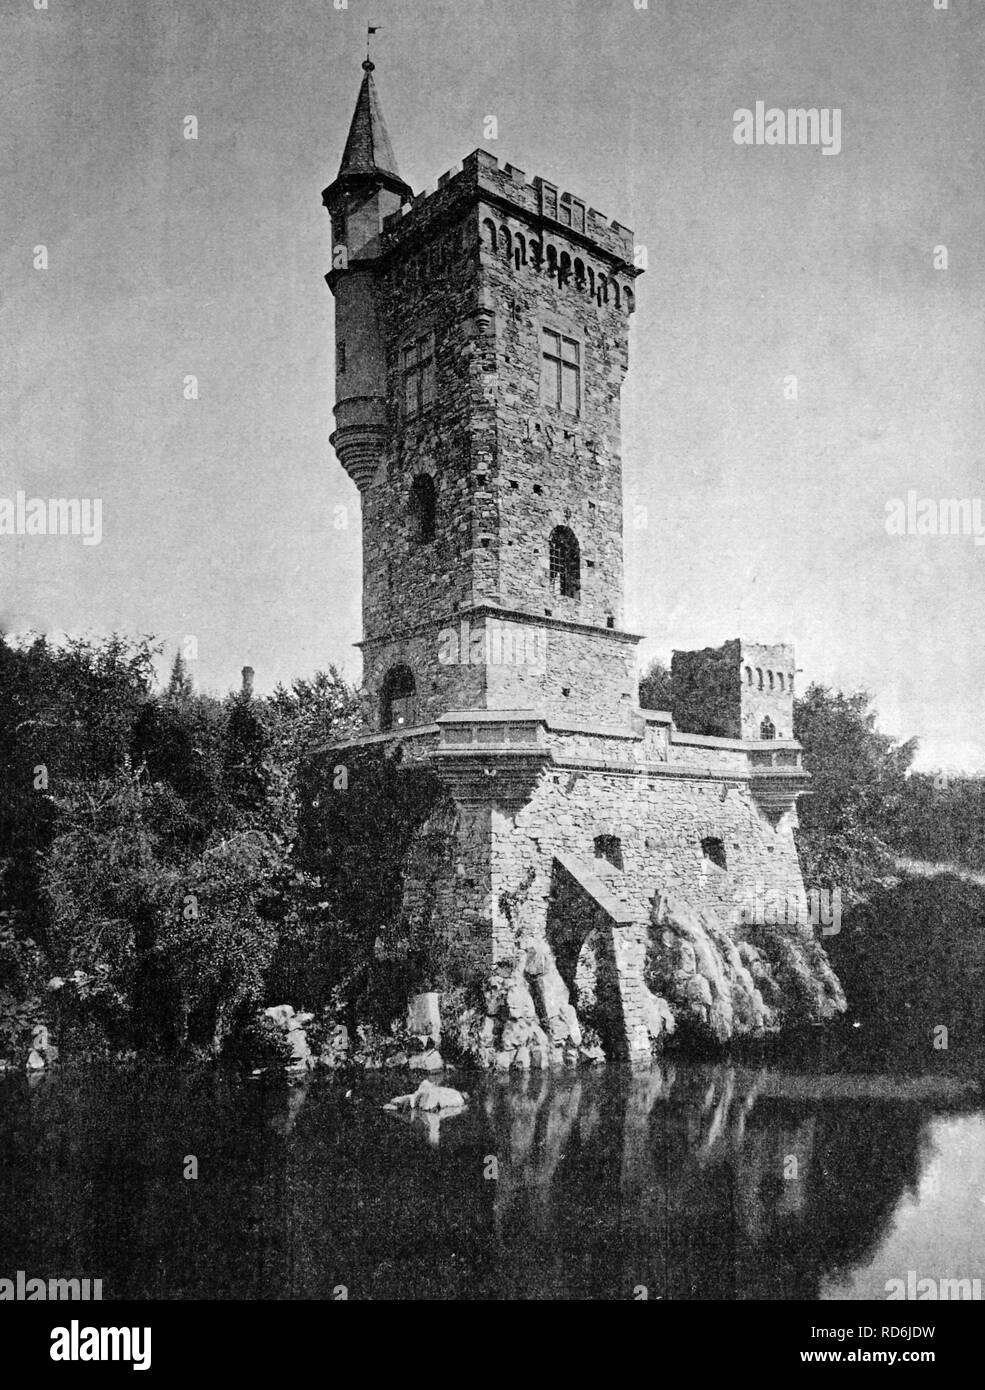 Frühe autotype der Binger Maeuseturm Tower, UNESCO-Weltkulturerbe, Bingen am Rhein, Rheinland-Pfalz, Deutschland Stockfoto